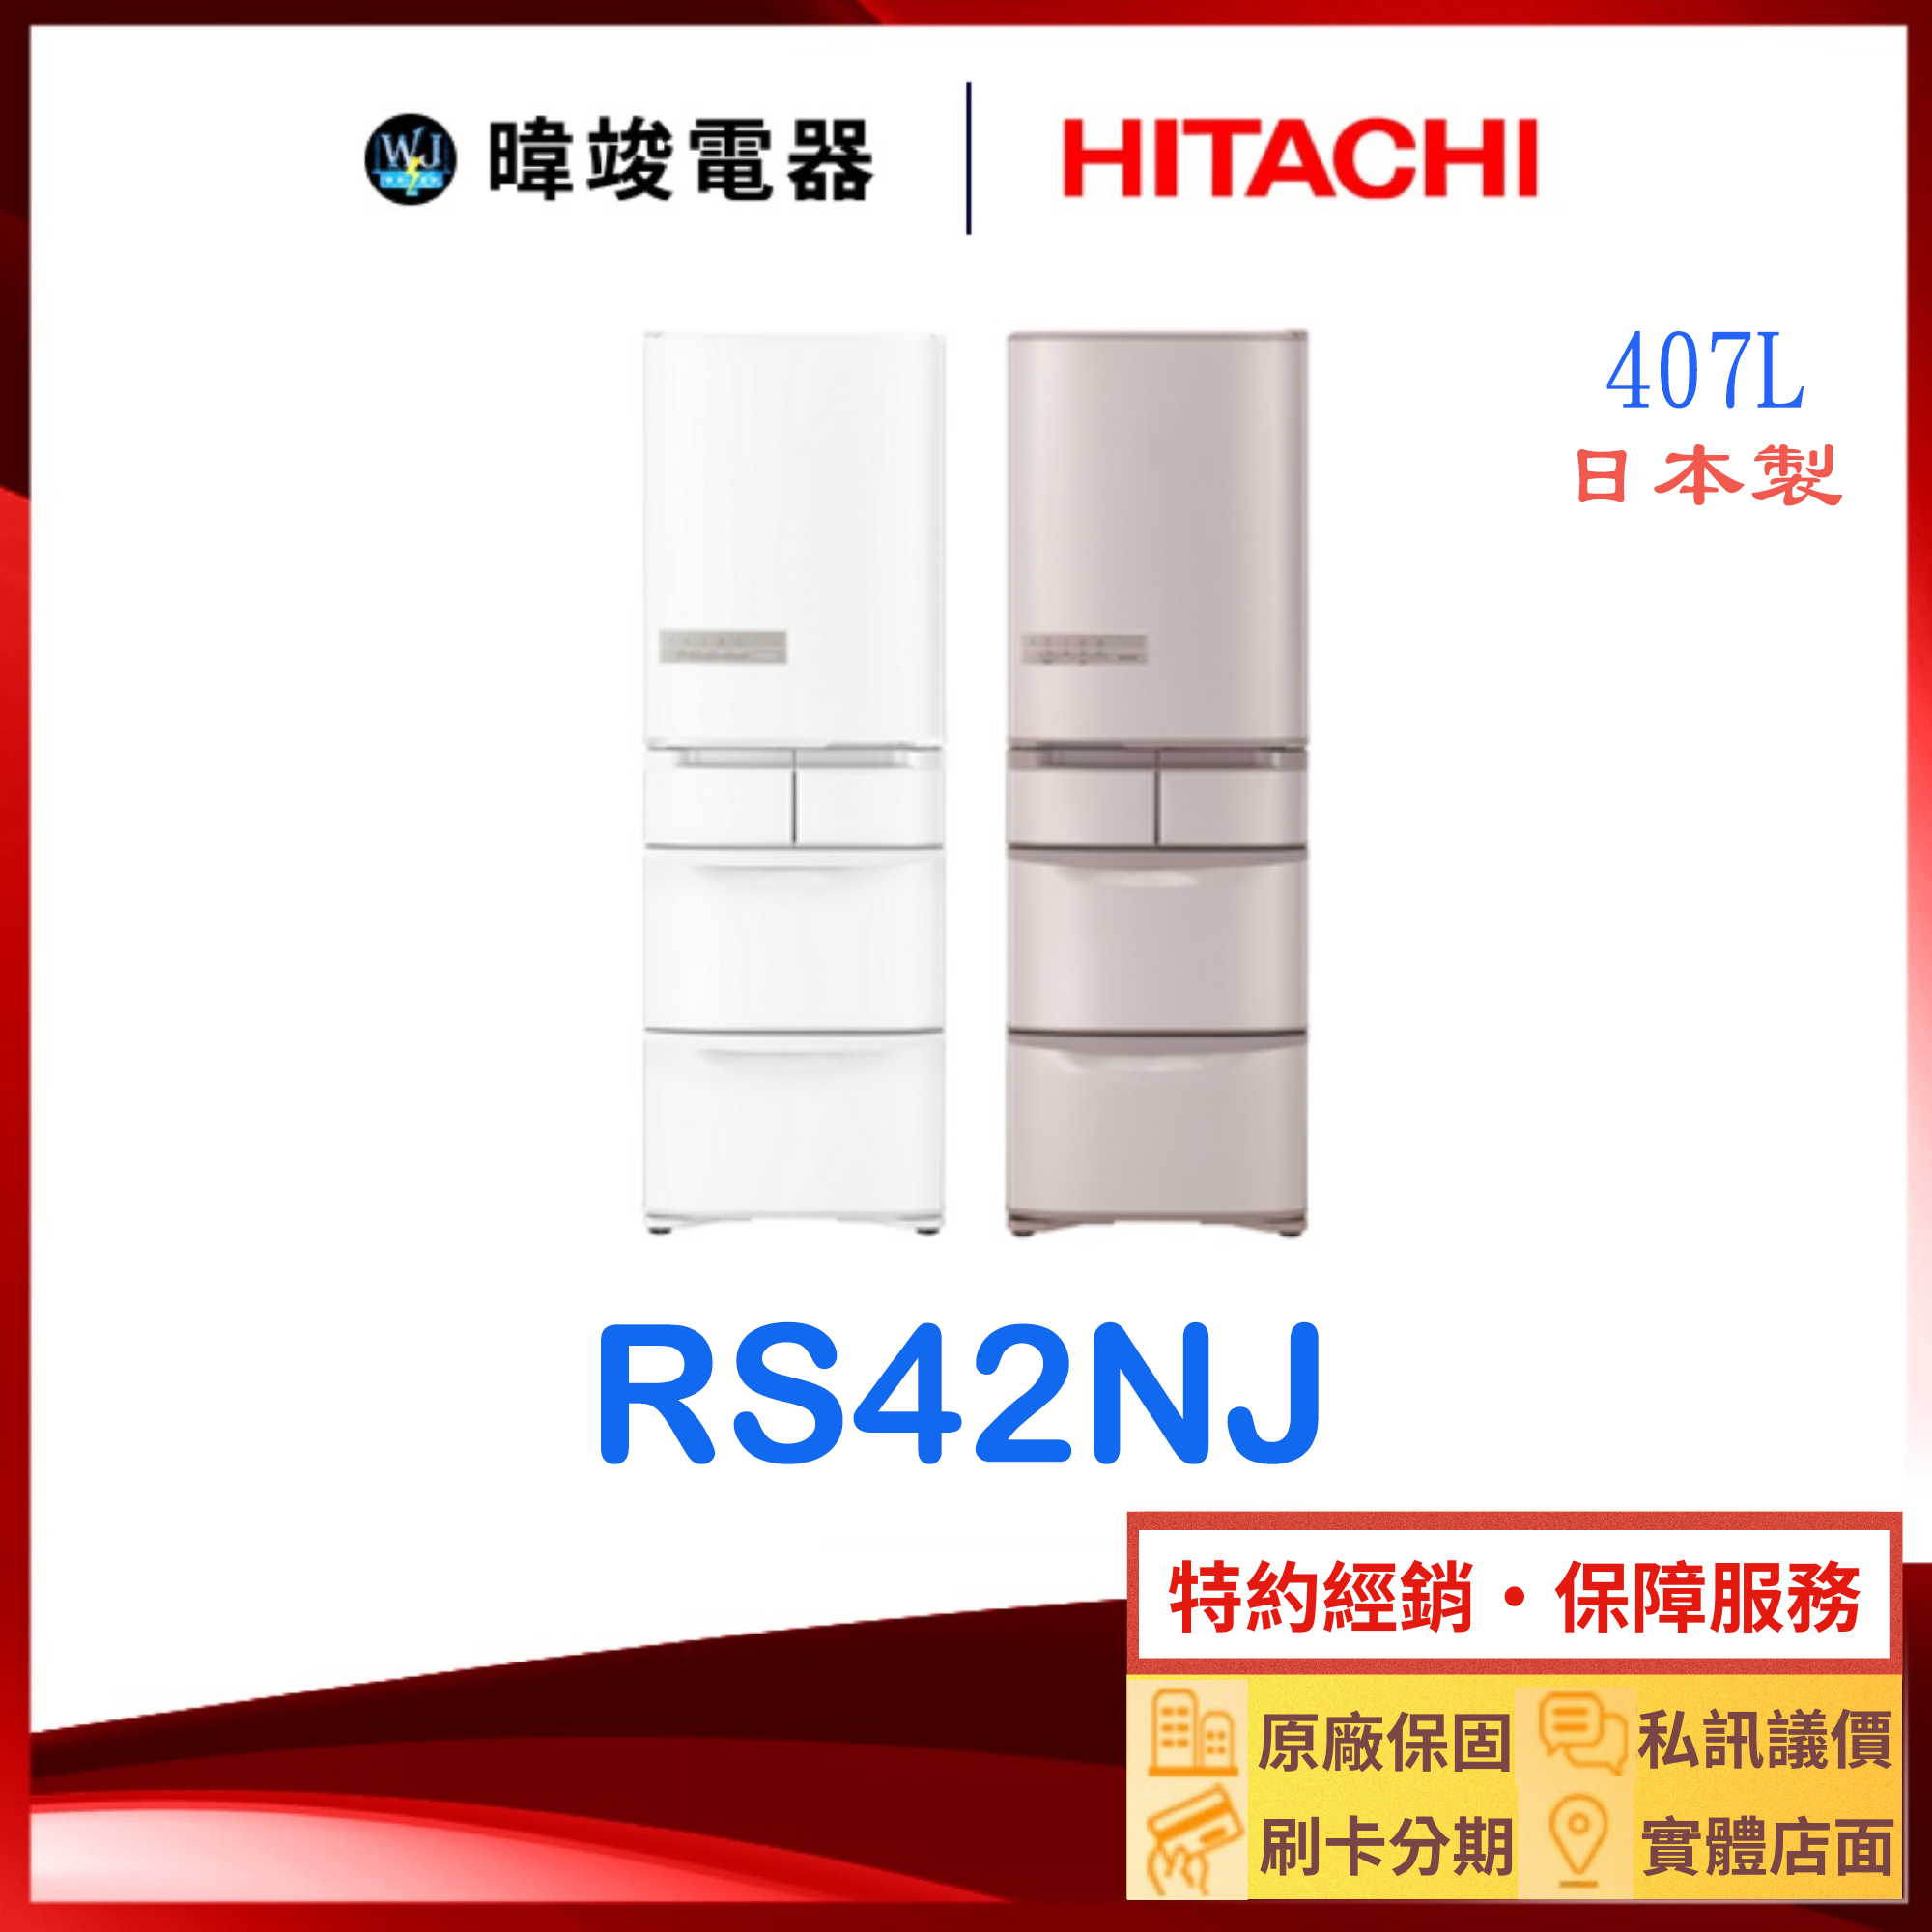 有現貨【獨家折扣碼】HITACHI 日立 RS42NJ 五門 變頻冰箱 1級能源效率 R-S42NJ 407公升 電冰箱